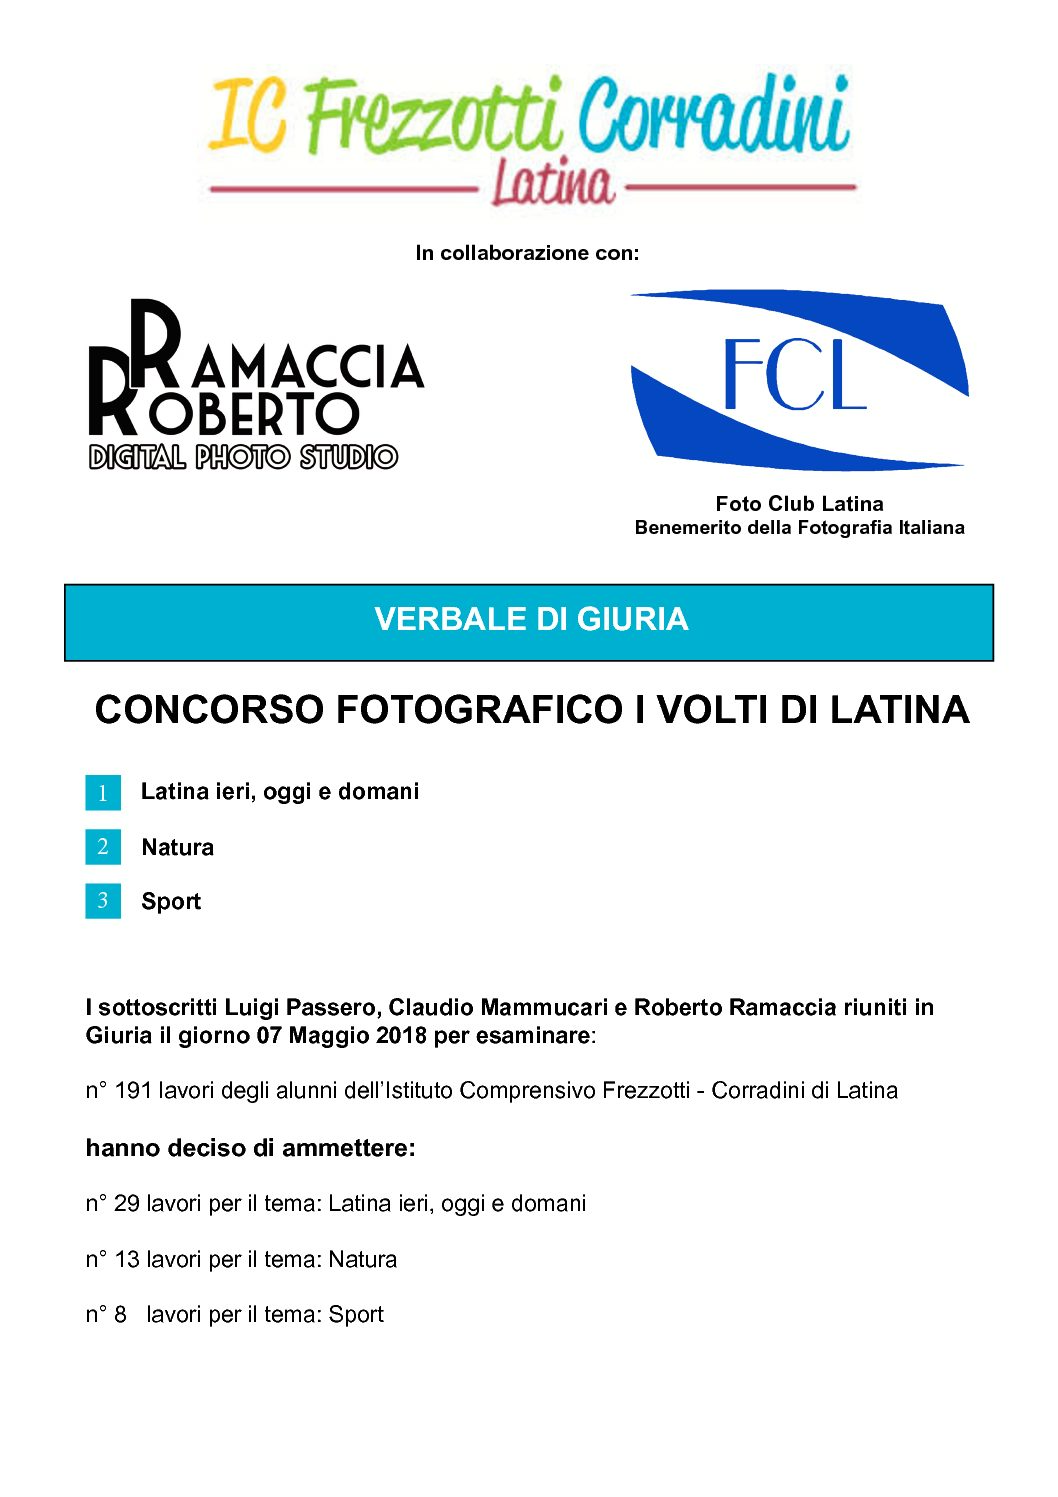 “I volti di Latina”, svelati i vincitori del concorso di fotografia